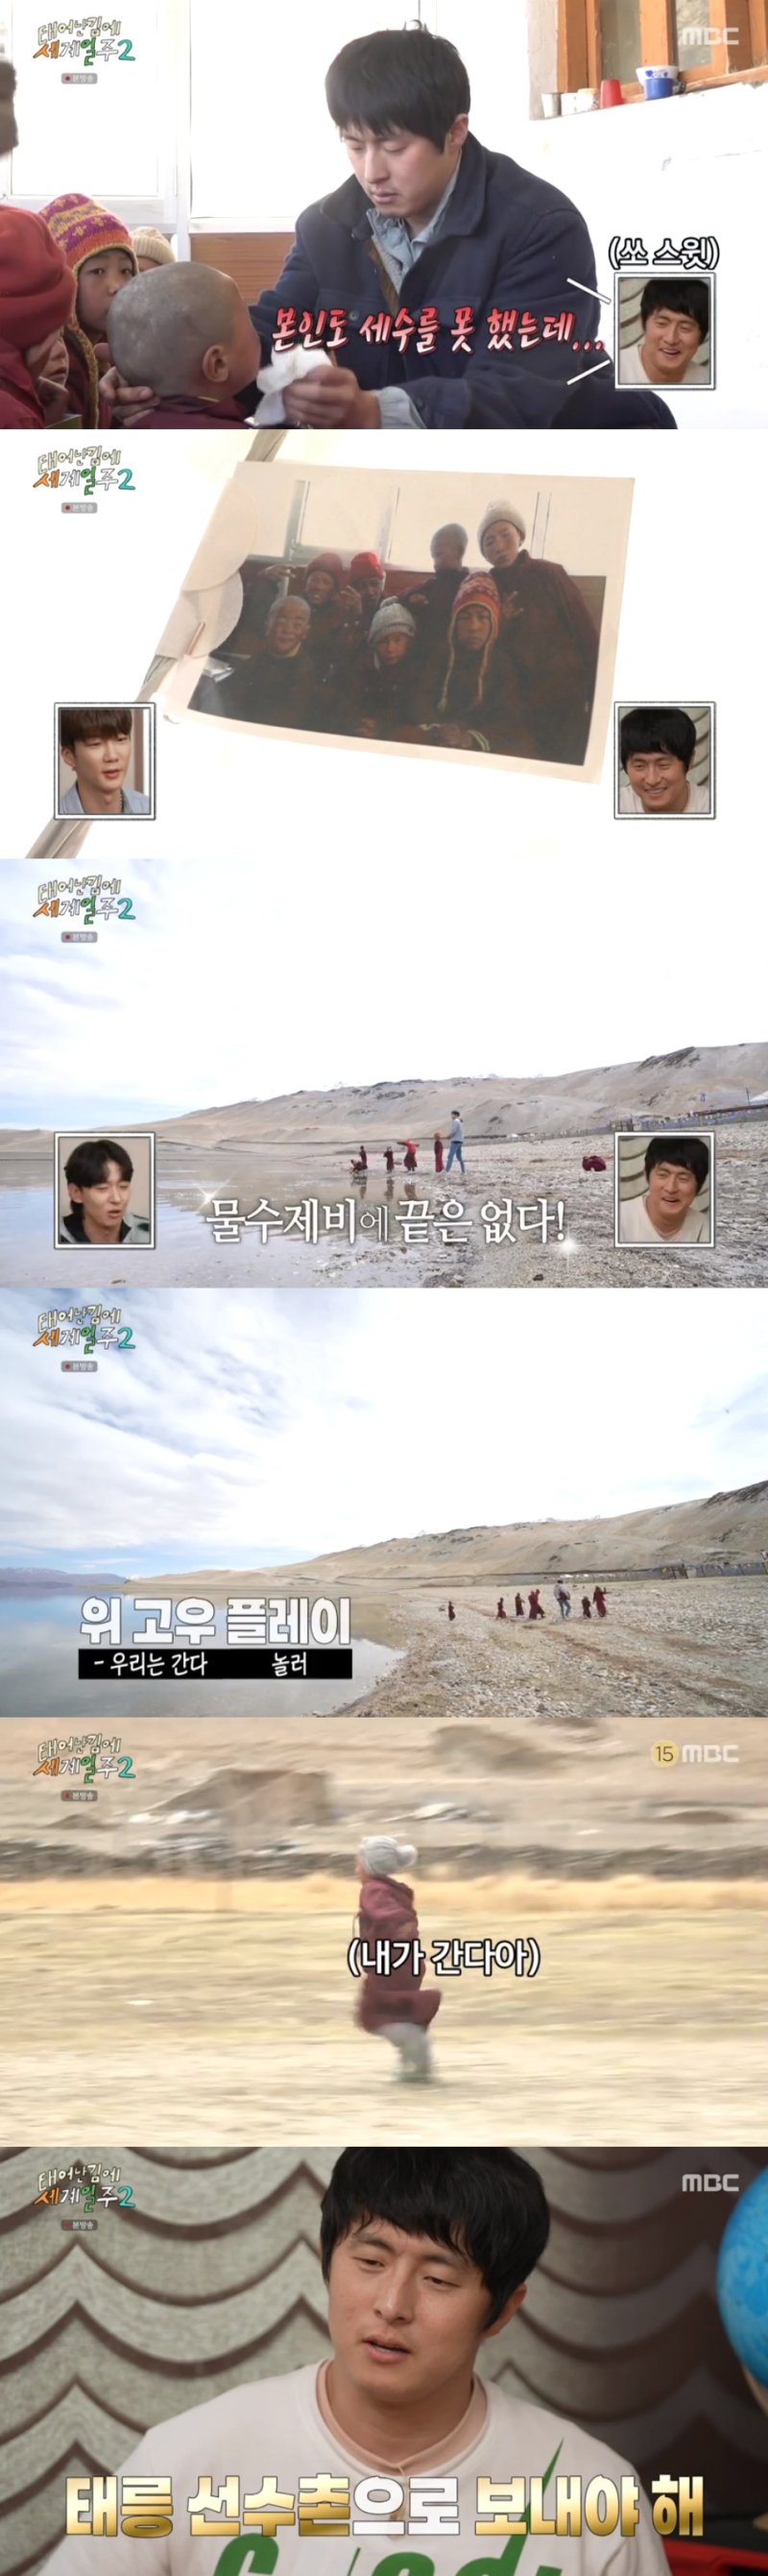 MBC '태어난 김에 세계일주2' 방송 화면 캡처